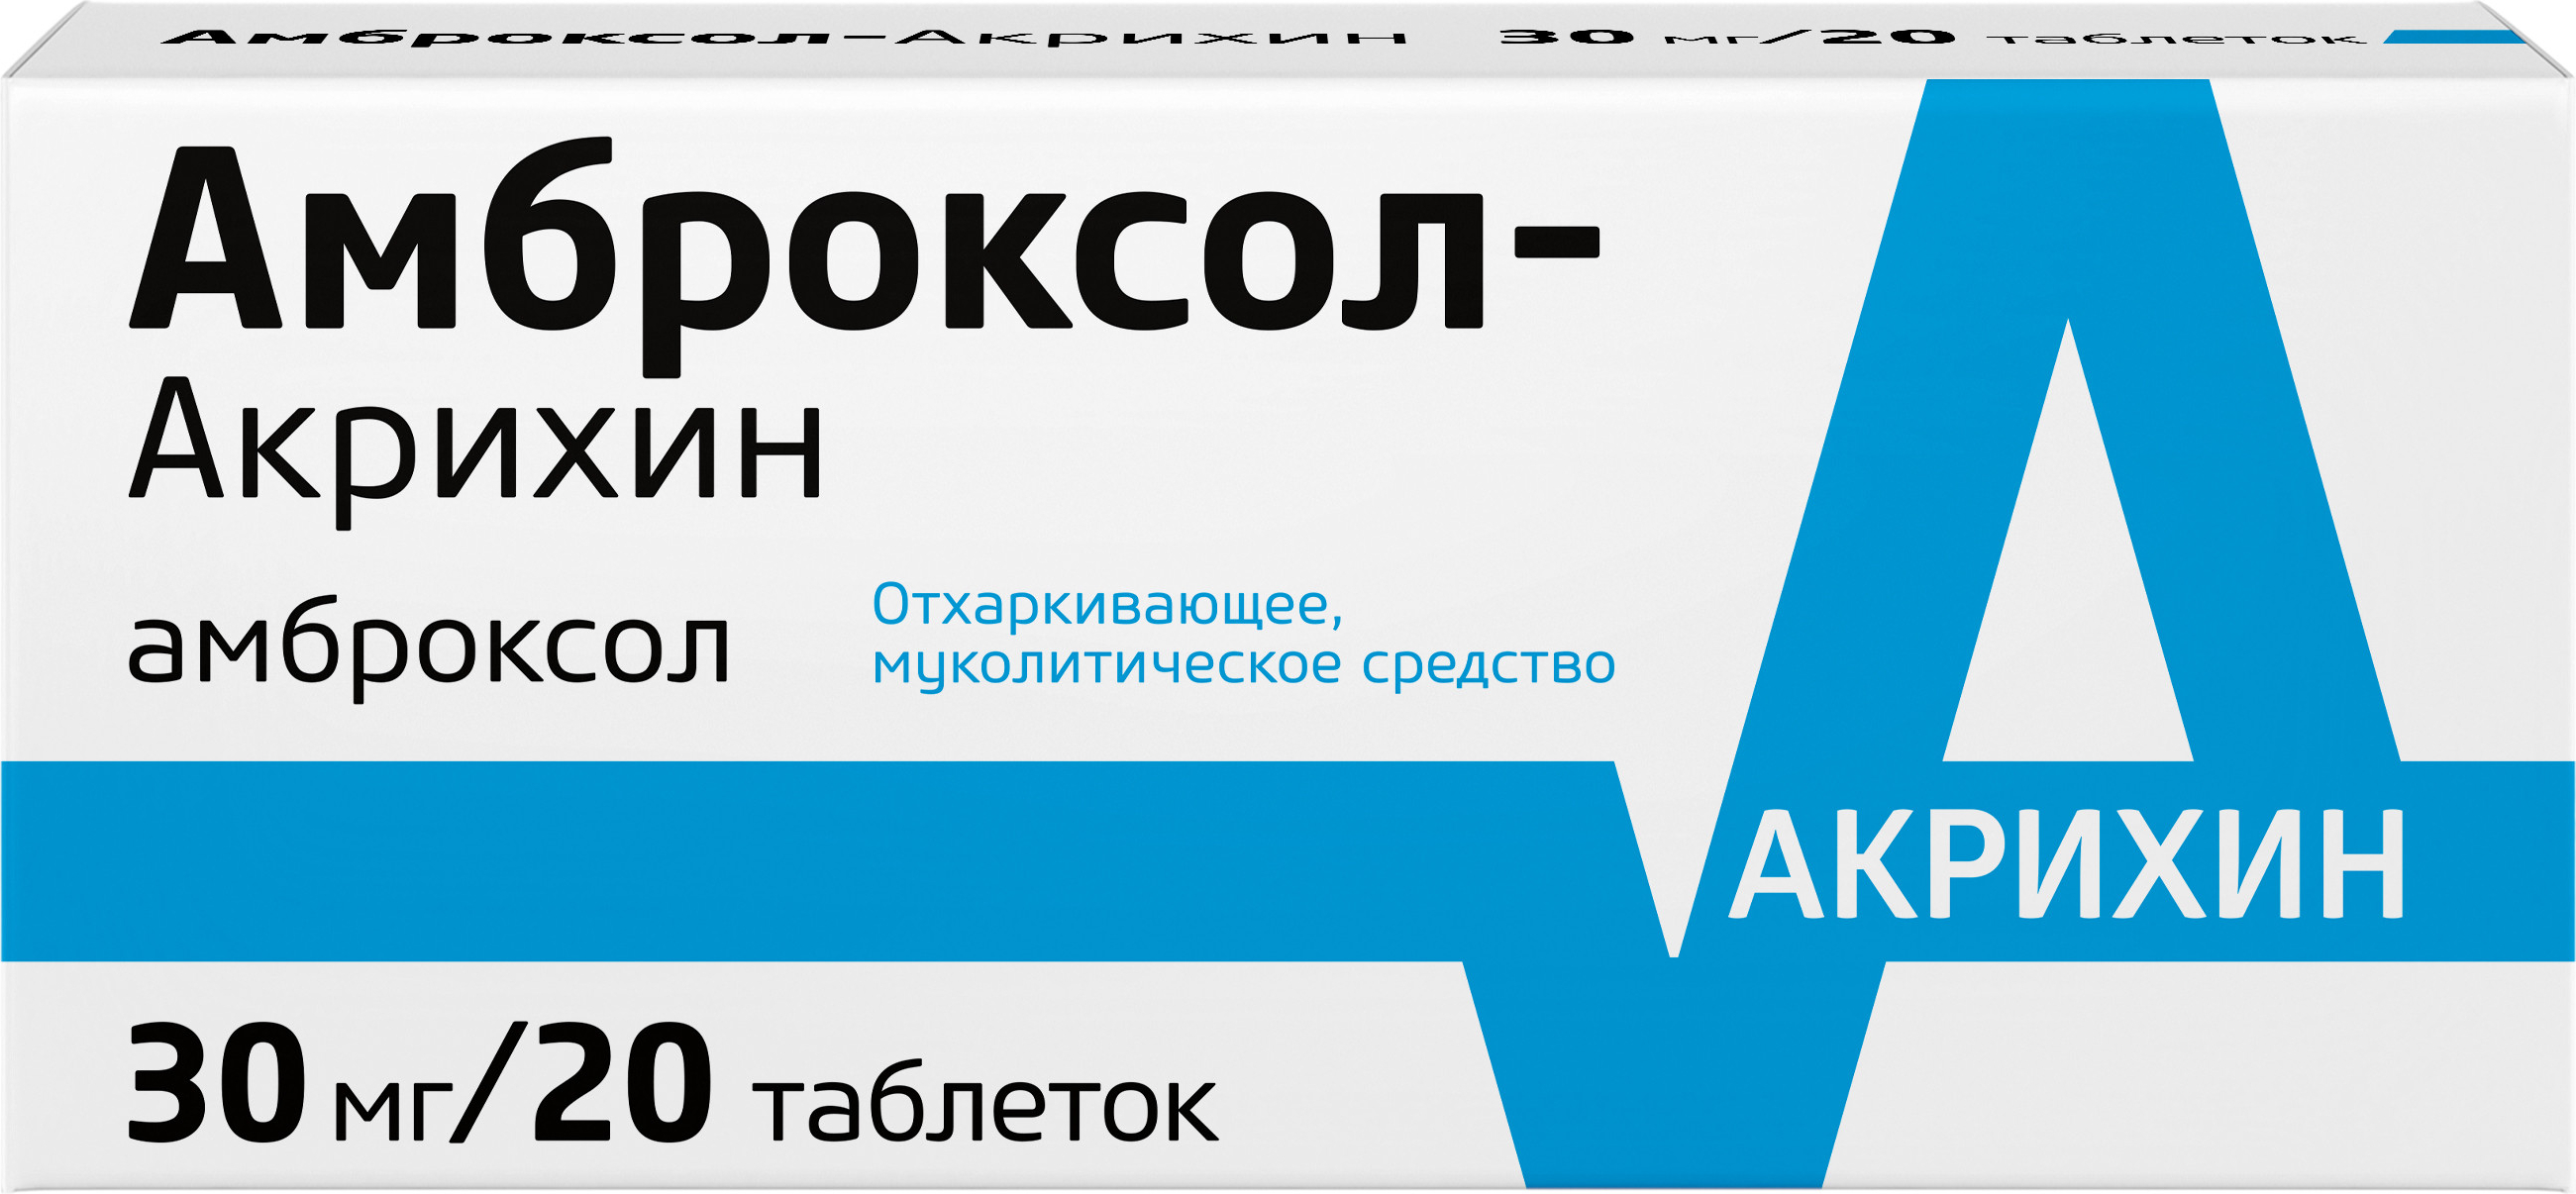 Амброксол-Акрихин, таблетки 30 мг, 20 шт. амброксол таблетки 30 мг обновление 20 шт